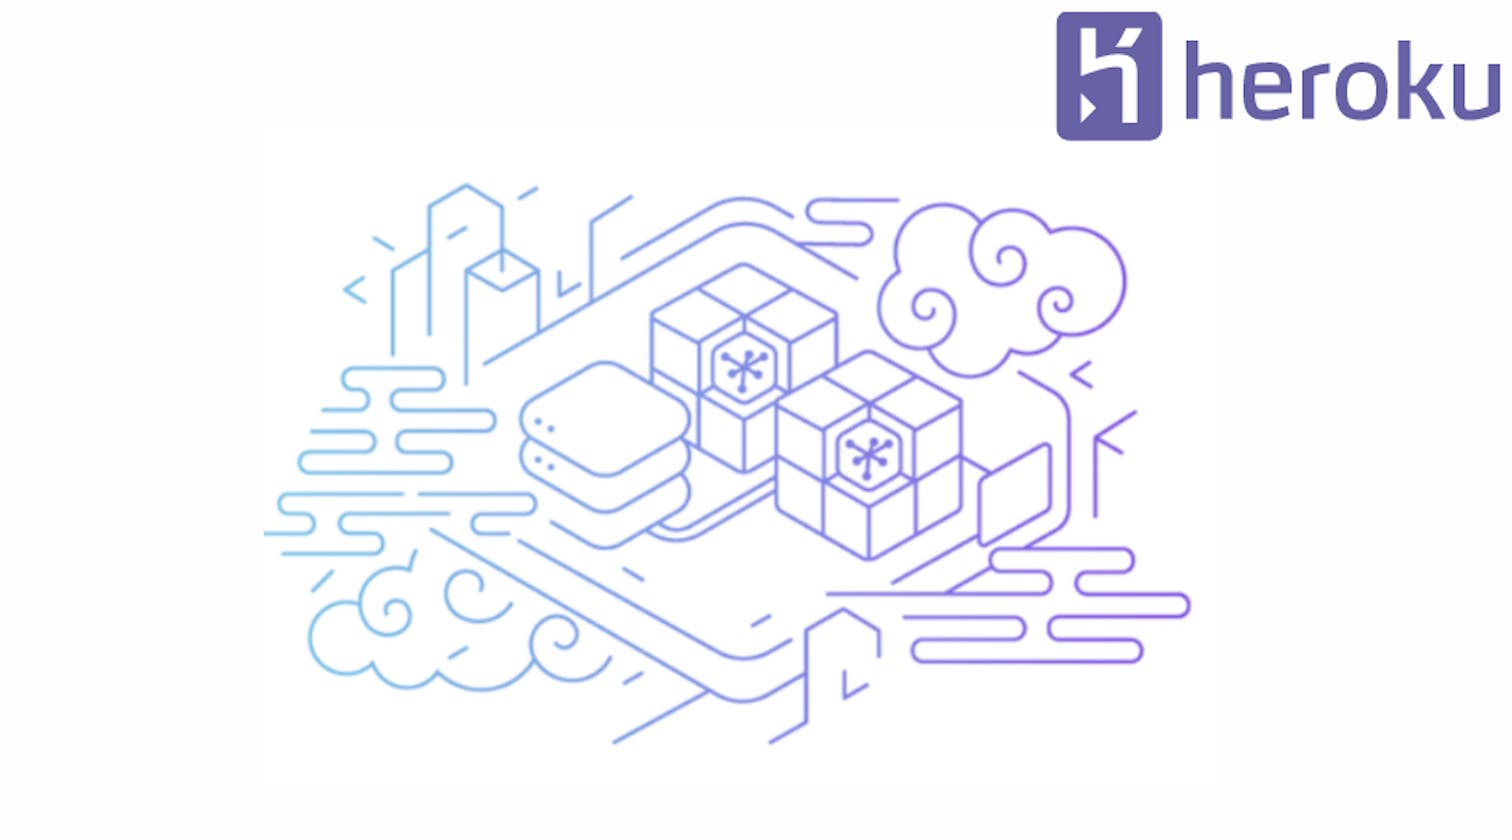 Heroku as a Cloud Platform